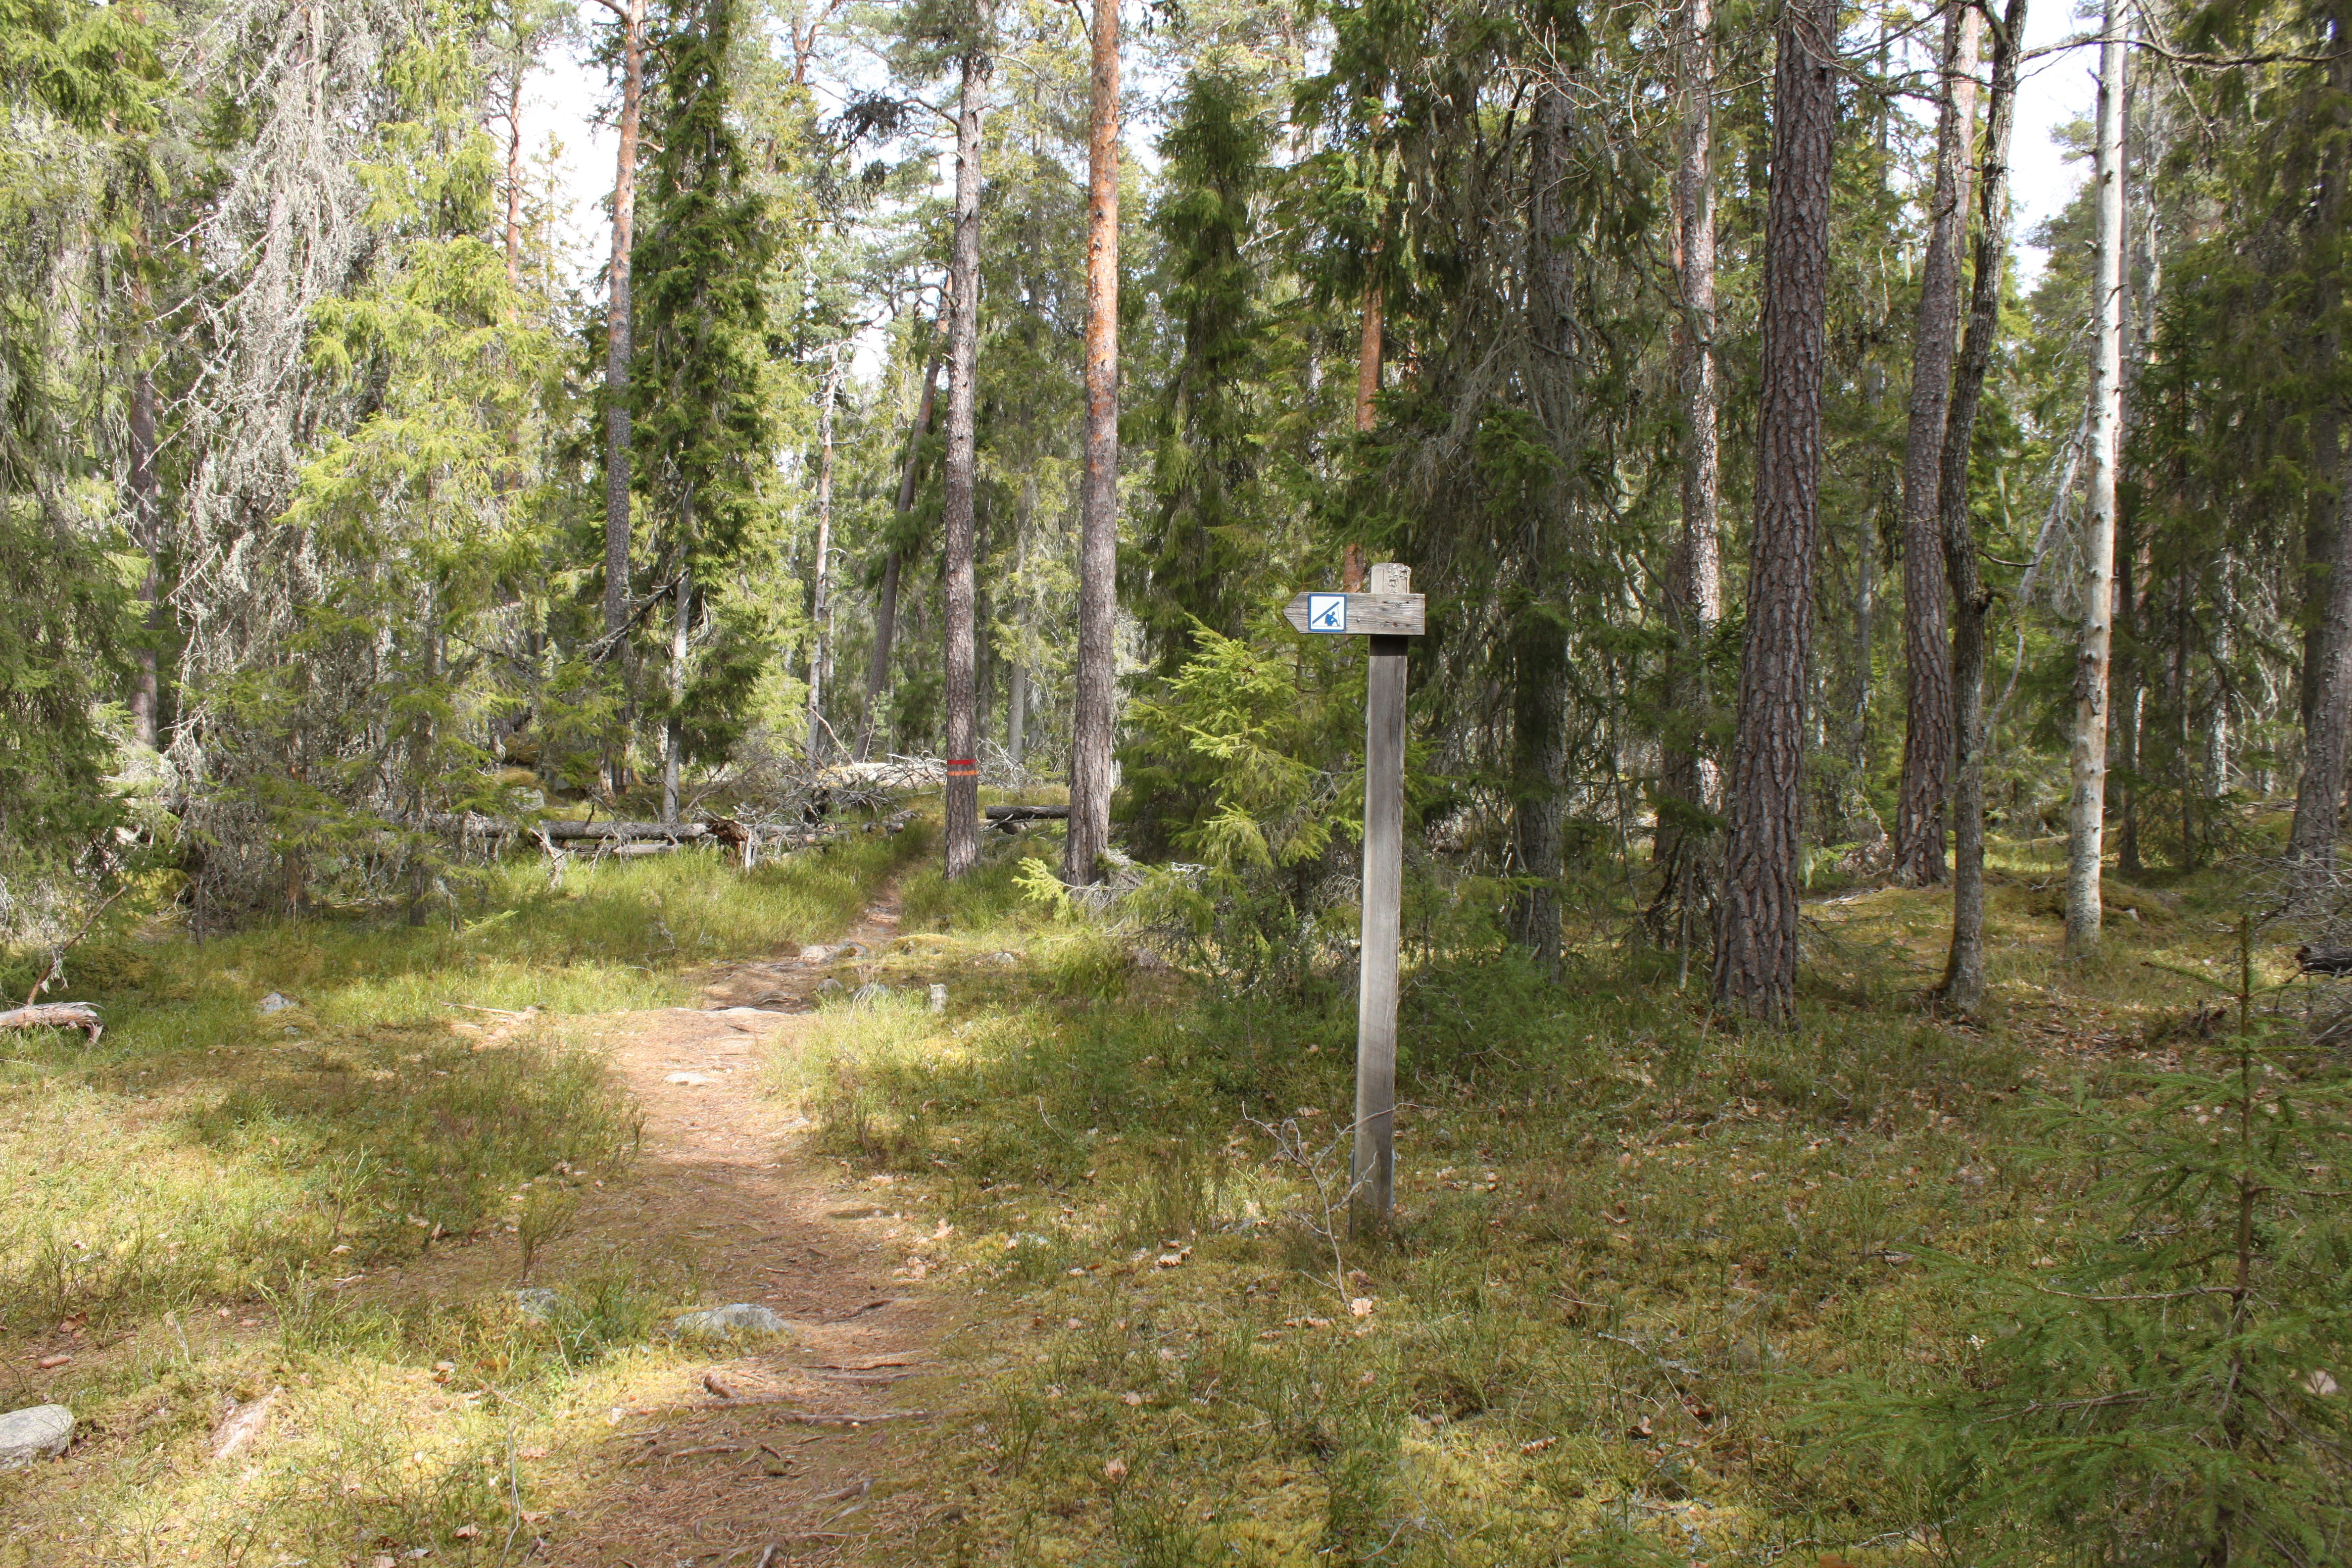 En smal stig går genom skogen. Vid stigen finns en vägvisare med symbol för vindskydd, som pekar åt vänster. Längre fram syns stigmarkeringar på en trädstam.